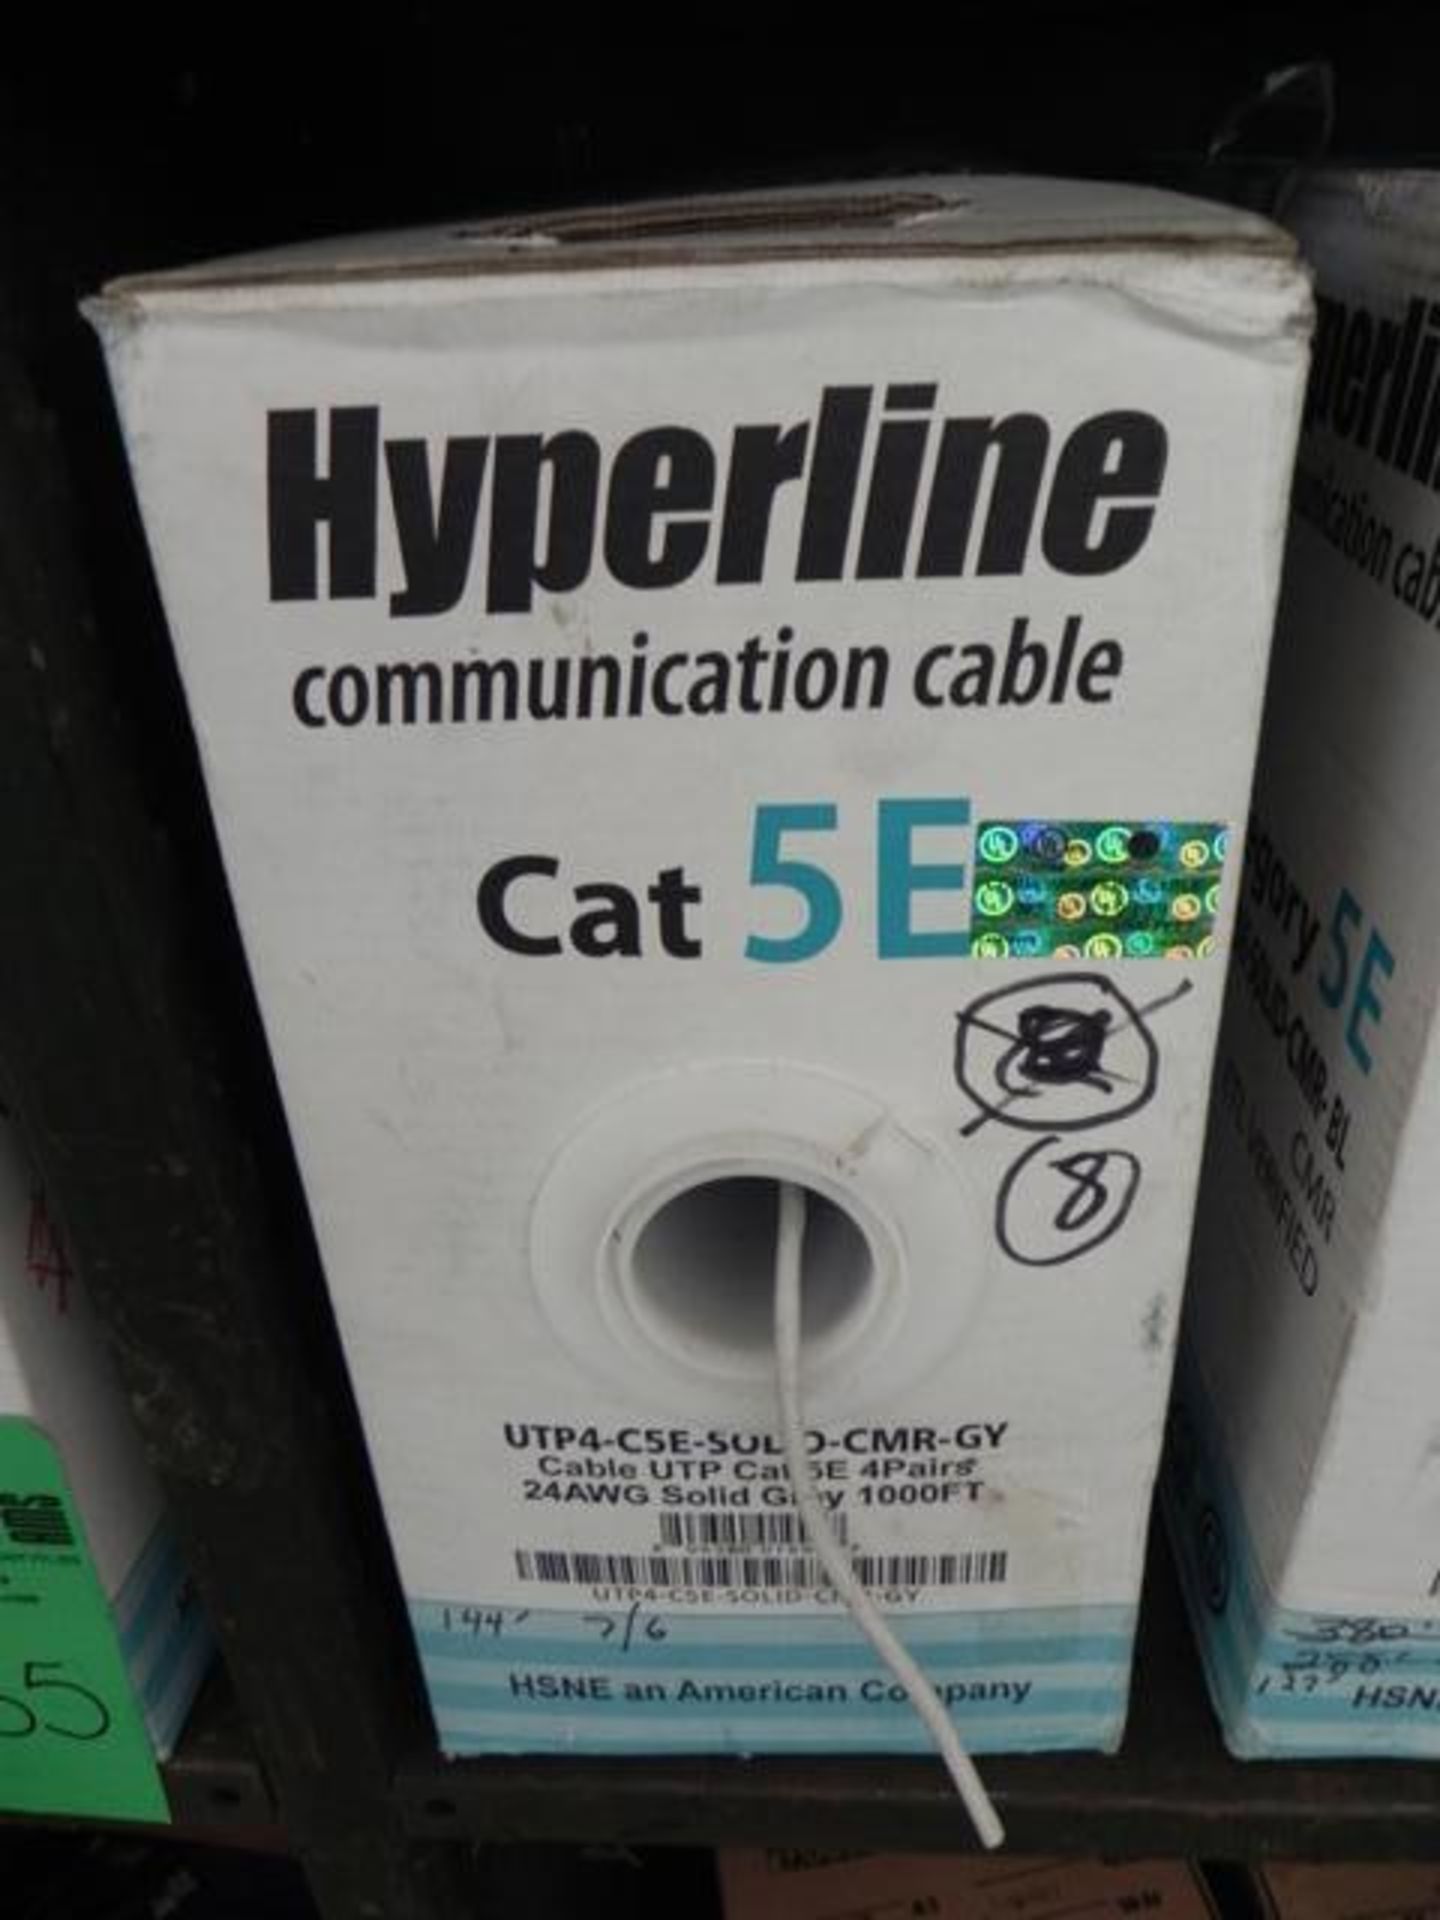 Hyperline Communication Cable Cat SEUTP4 - CSE - SOLID - CPM 2 BL 2/GV, CMP ETL verified 4000 FT - Image 5 of 5